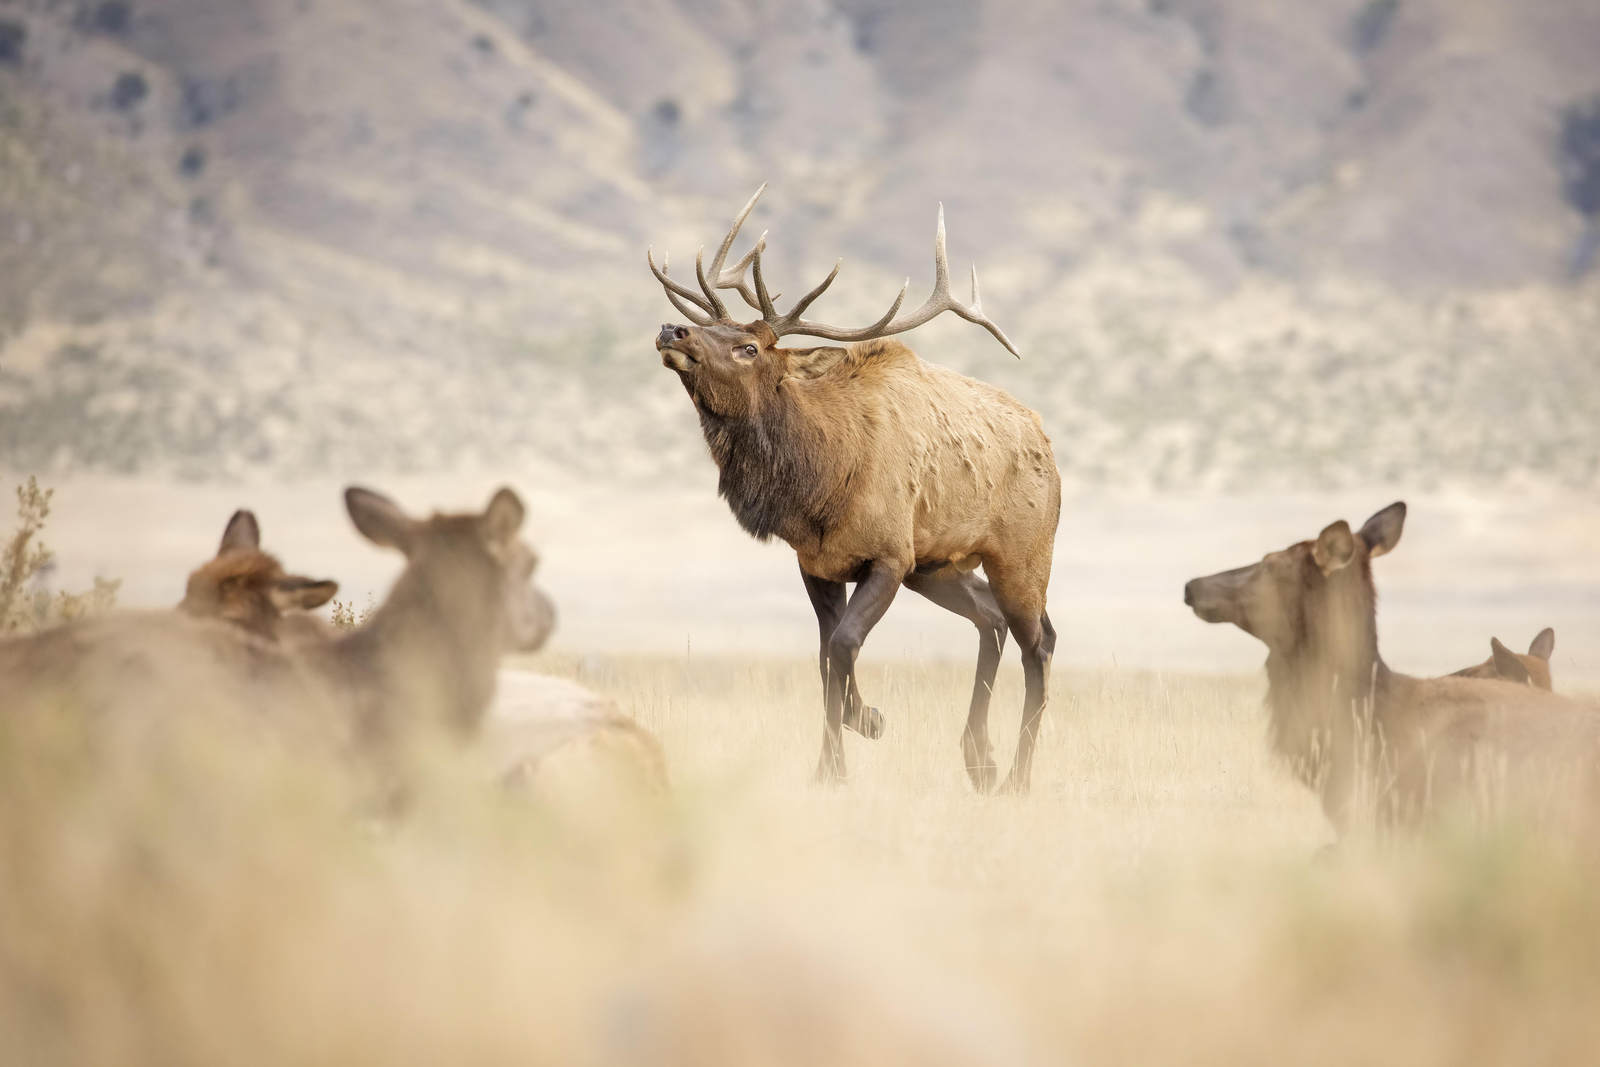 male elk with antlers walking in front of female elk